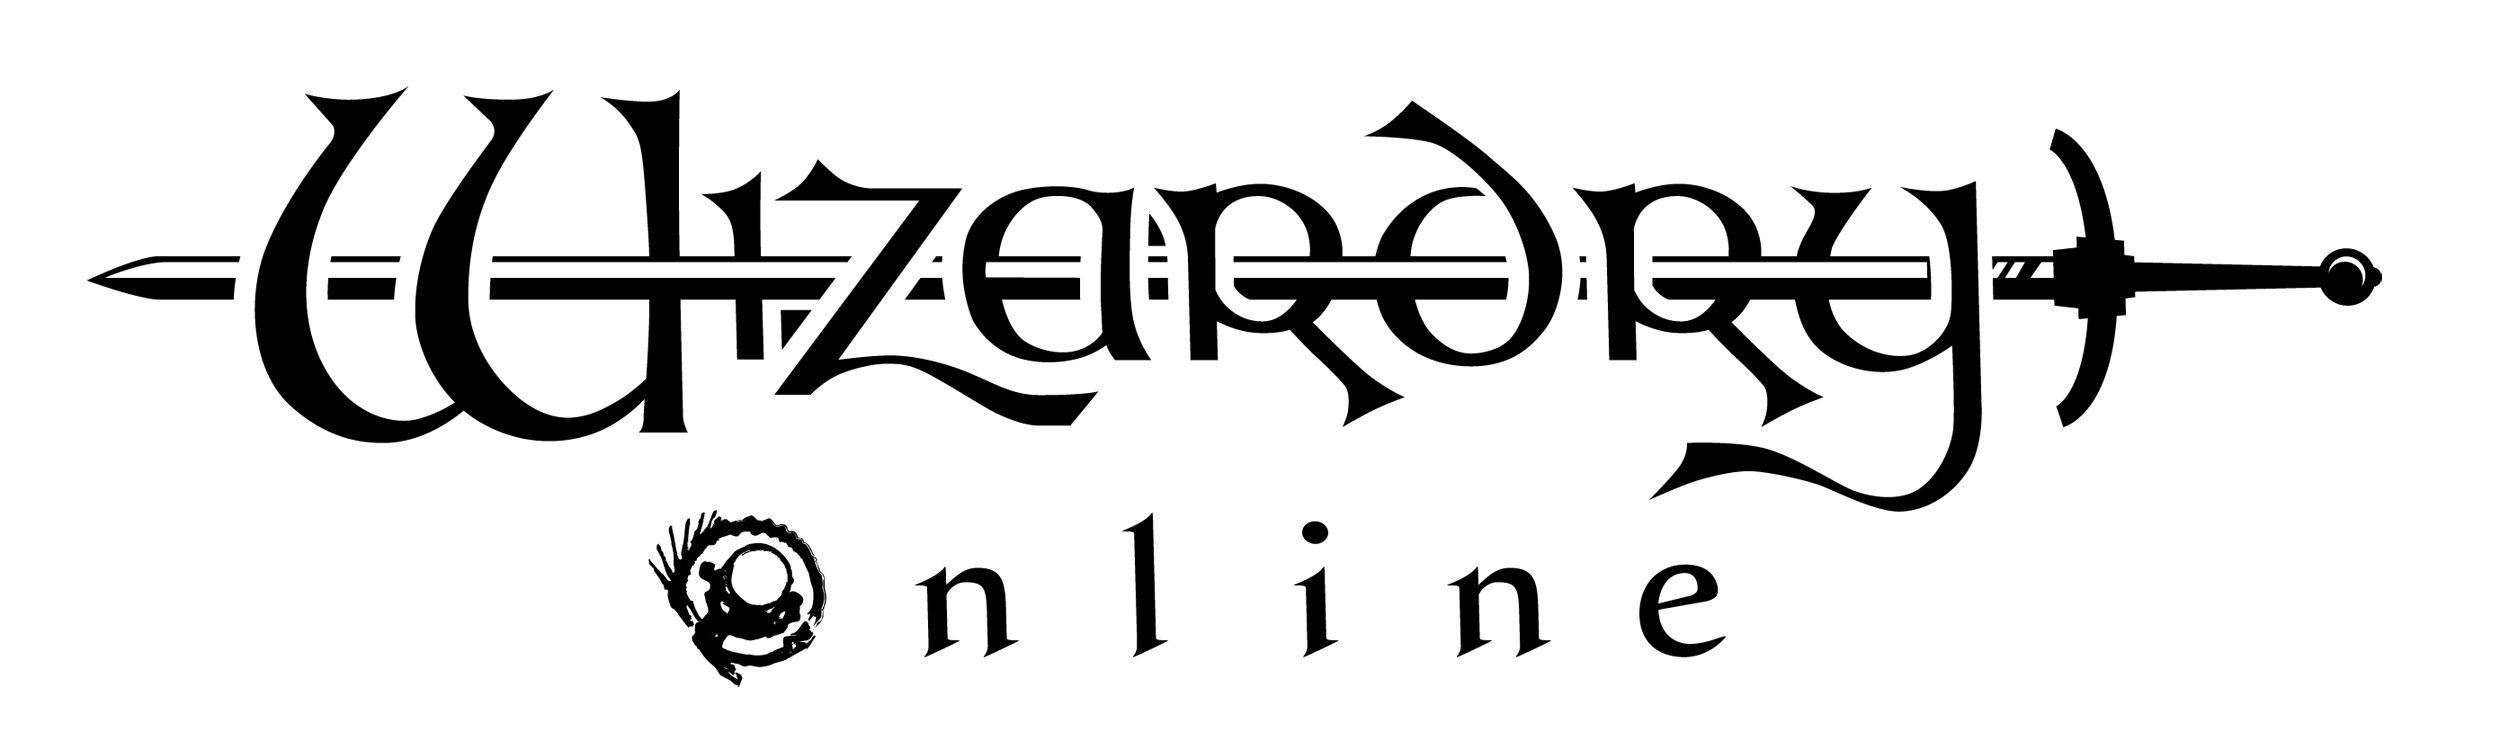 Wizardry Logo - RPGFan Picture